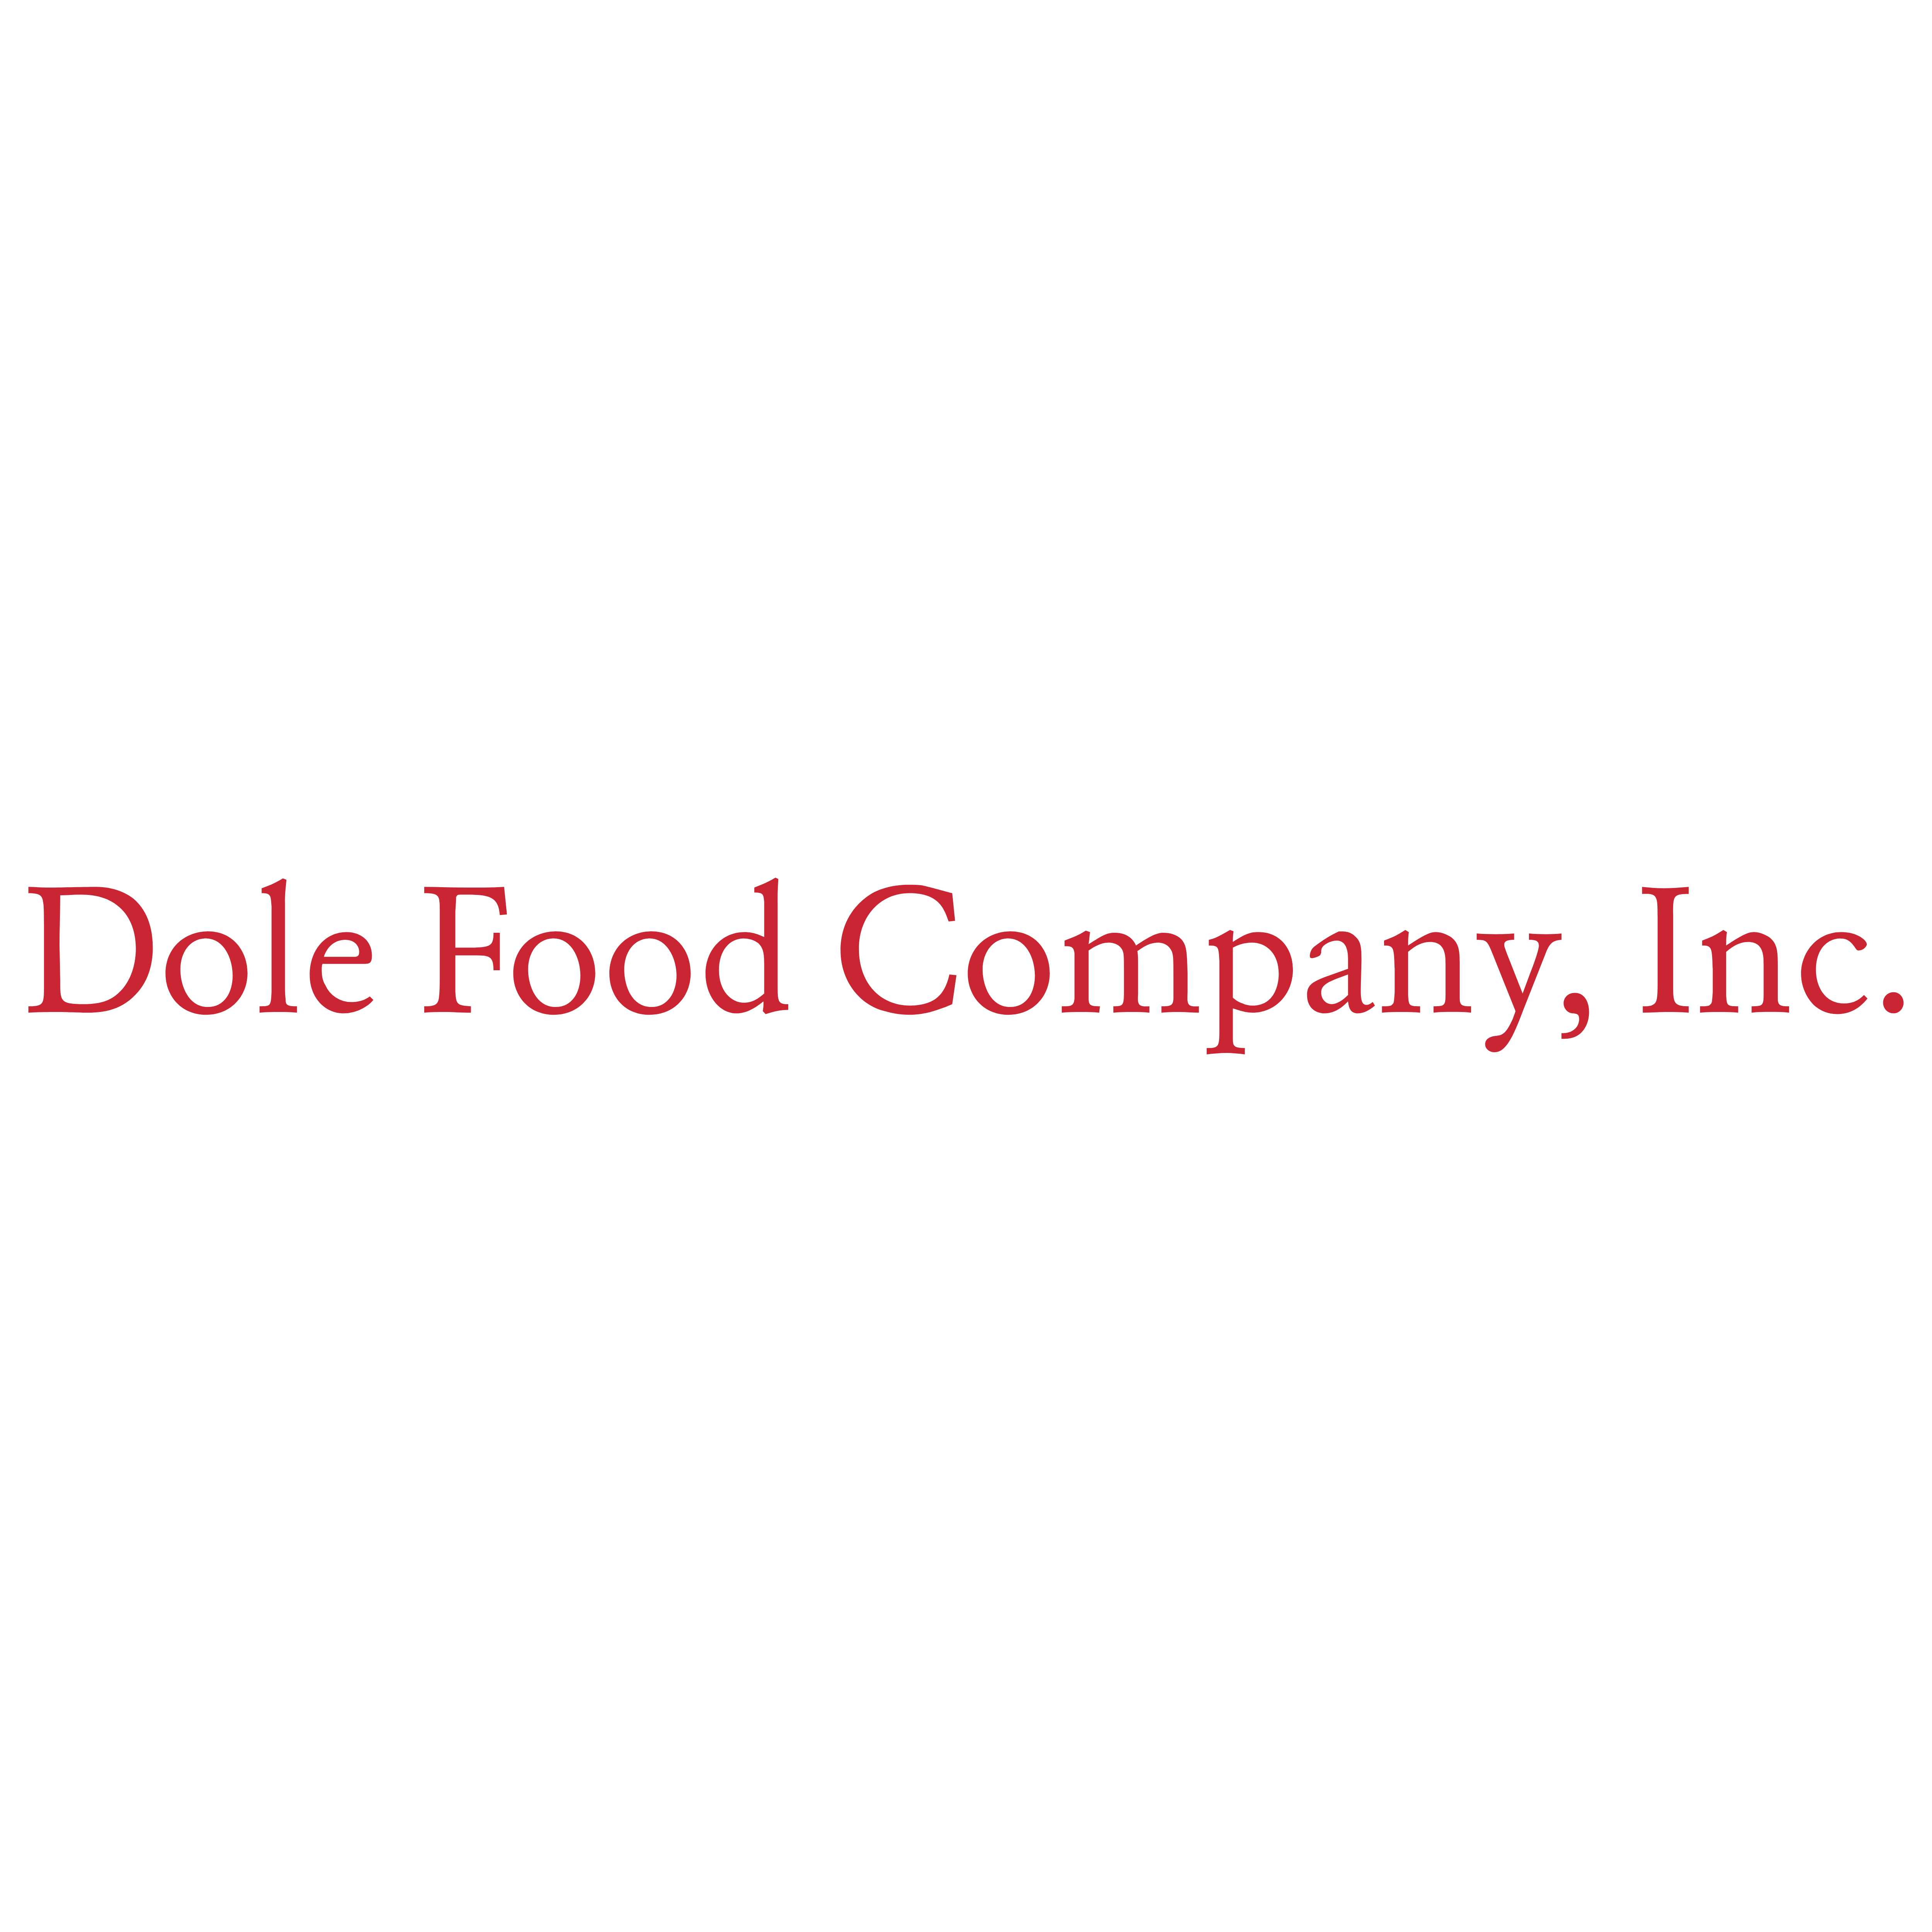 Dole Food Company Logo - Dole Food Company – Logos Download